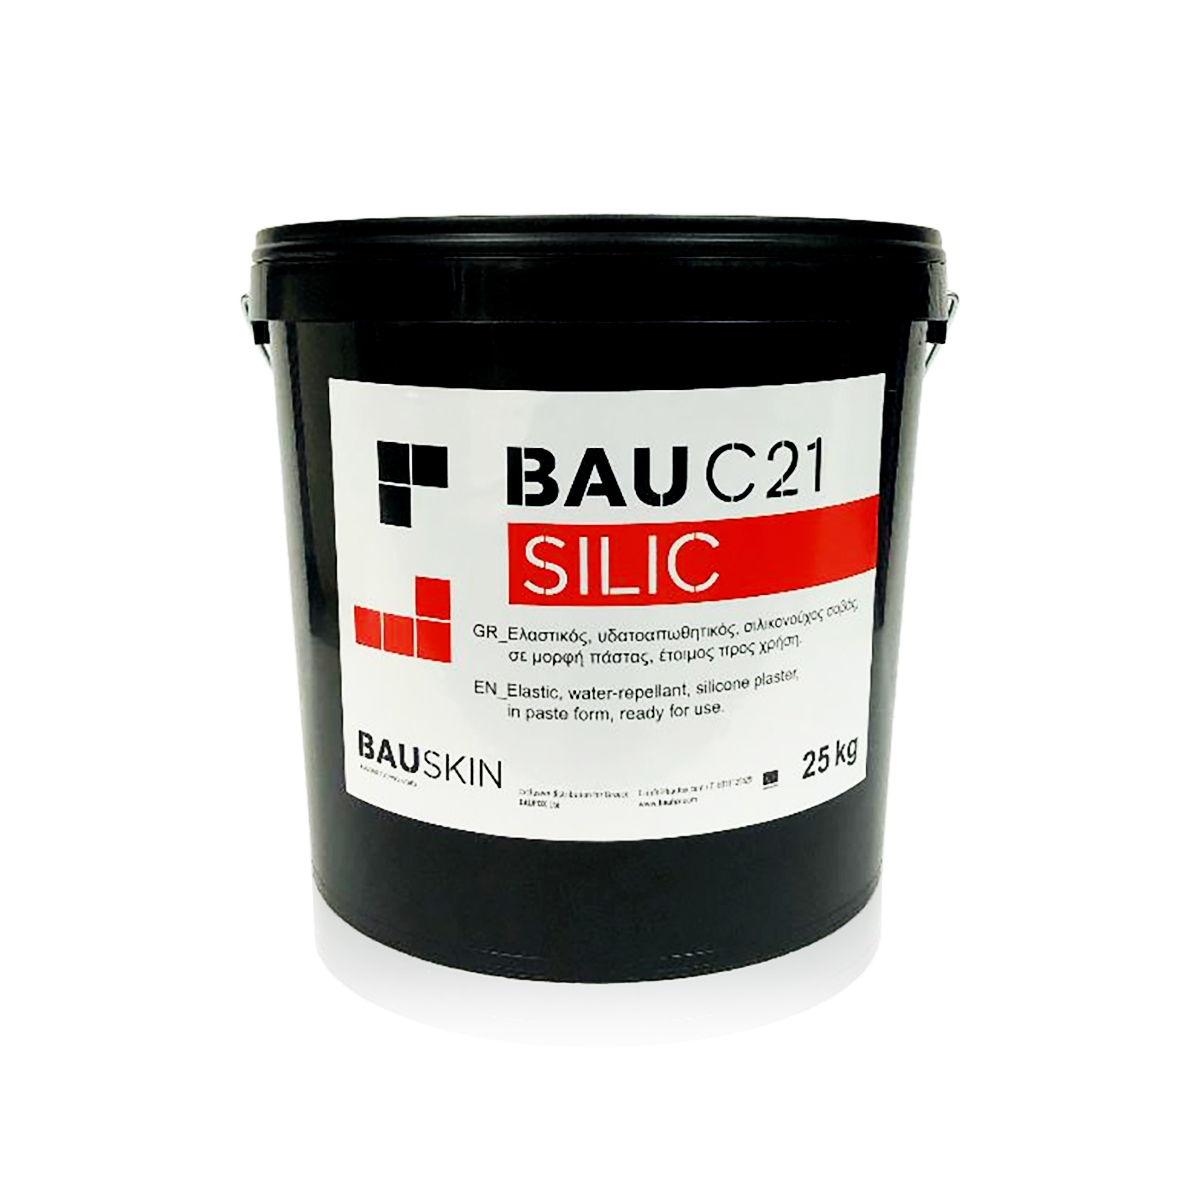 BAU C21 SILIC, σοβάς σε πάστα, 1,5mm F, λευκό 25kg/δοχείο